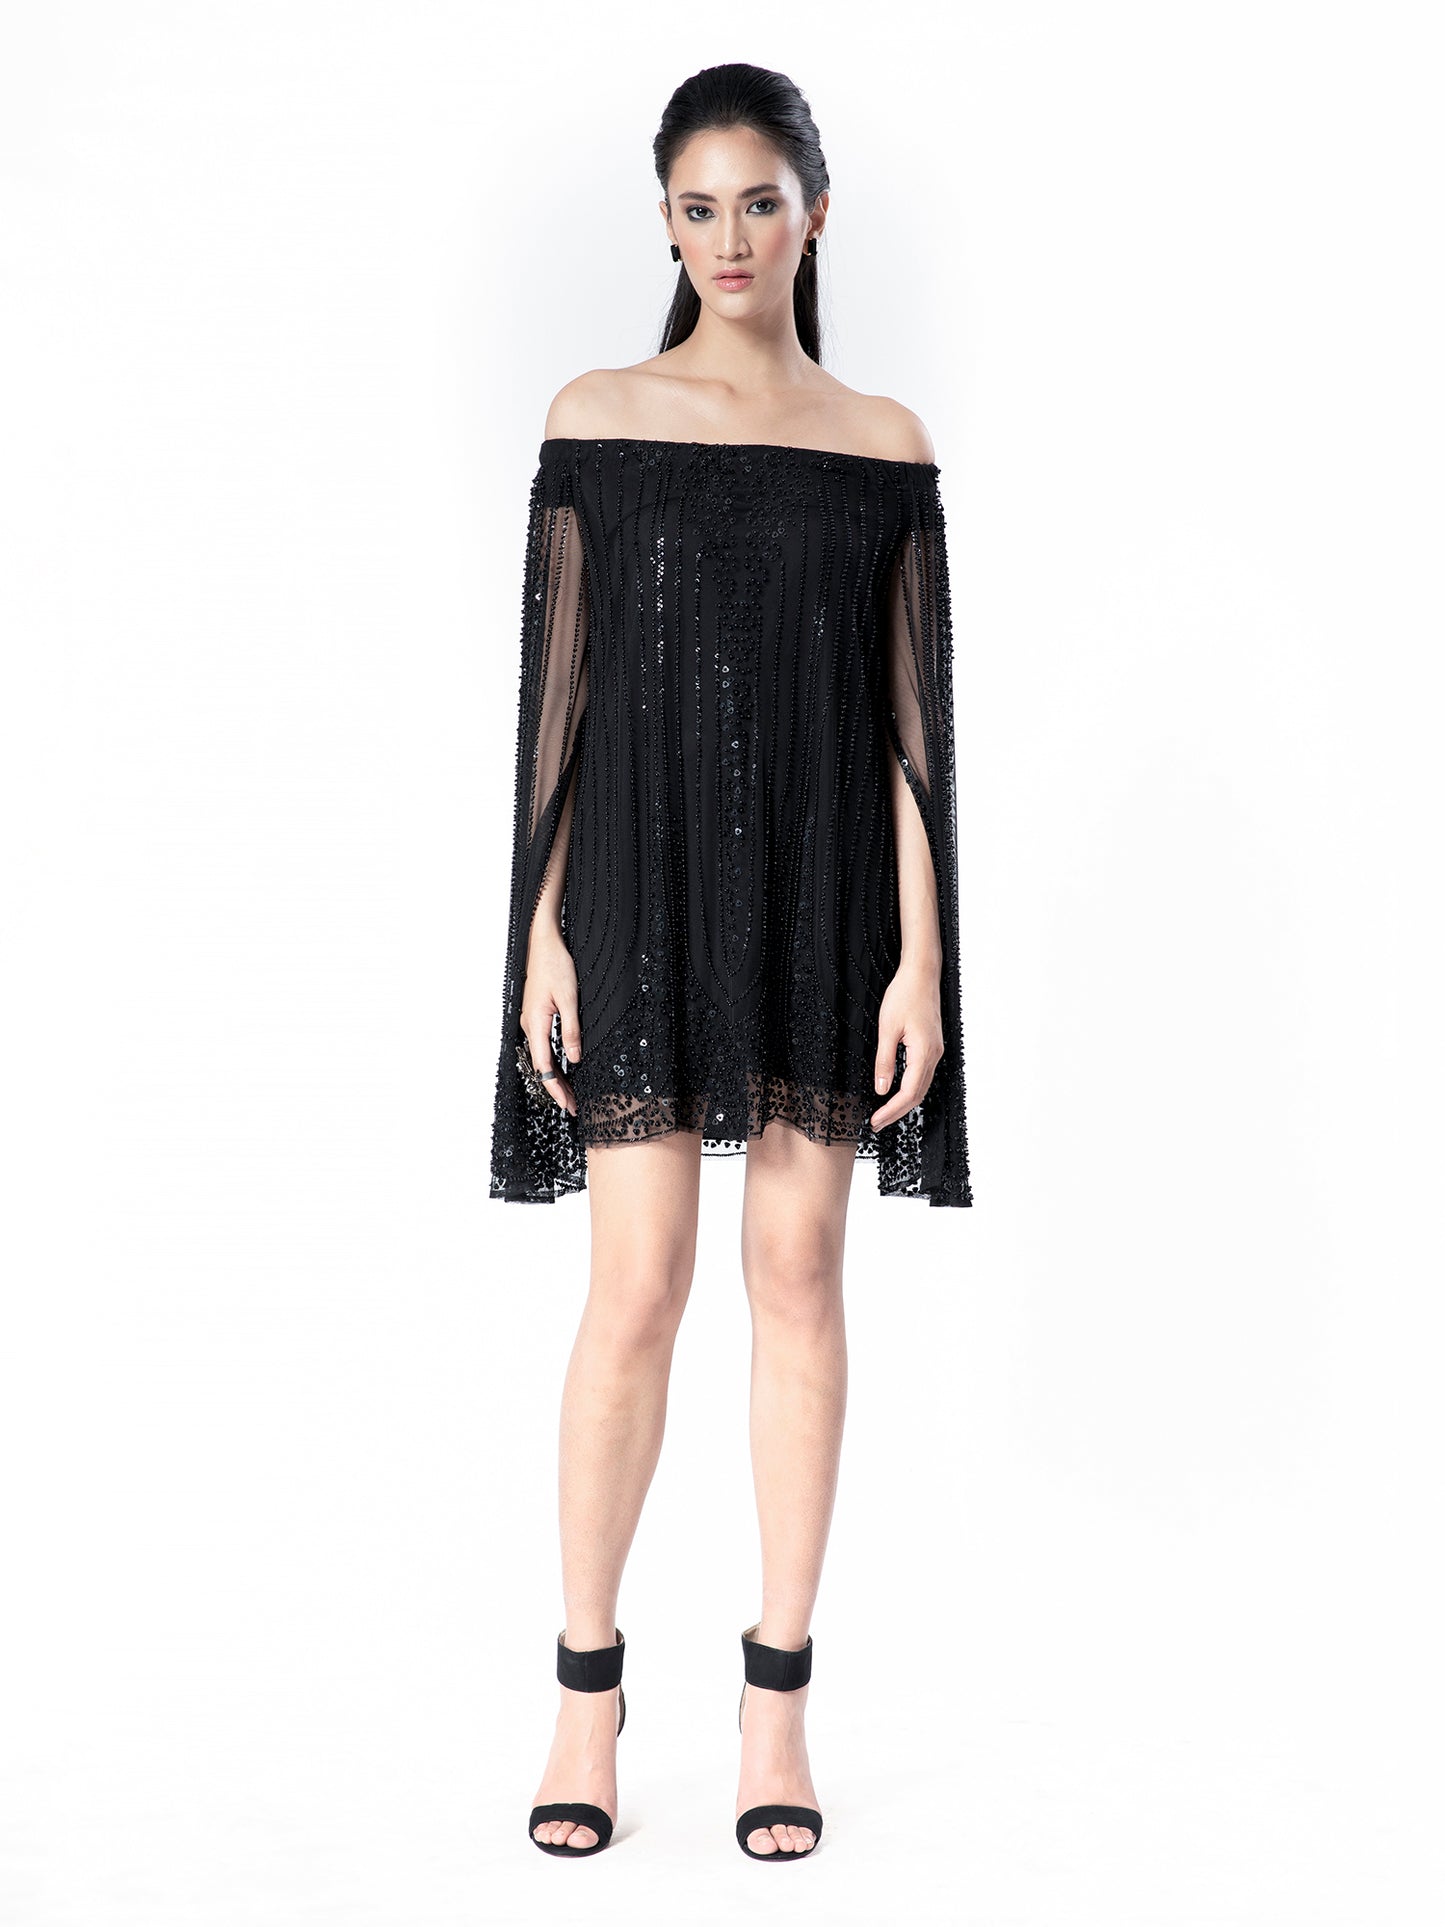 Black Off-Shoulder Embellished Dress